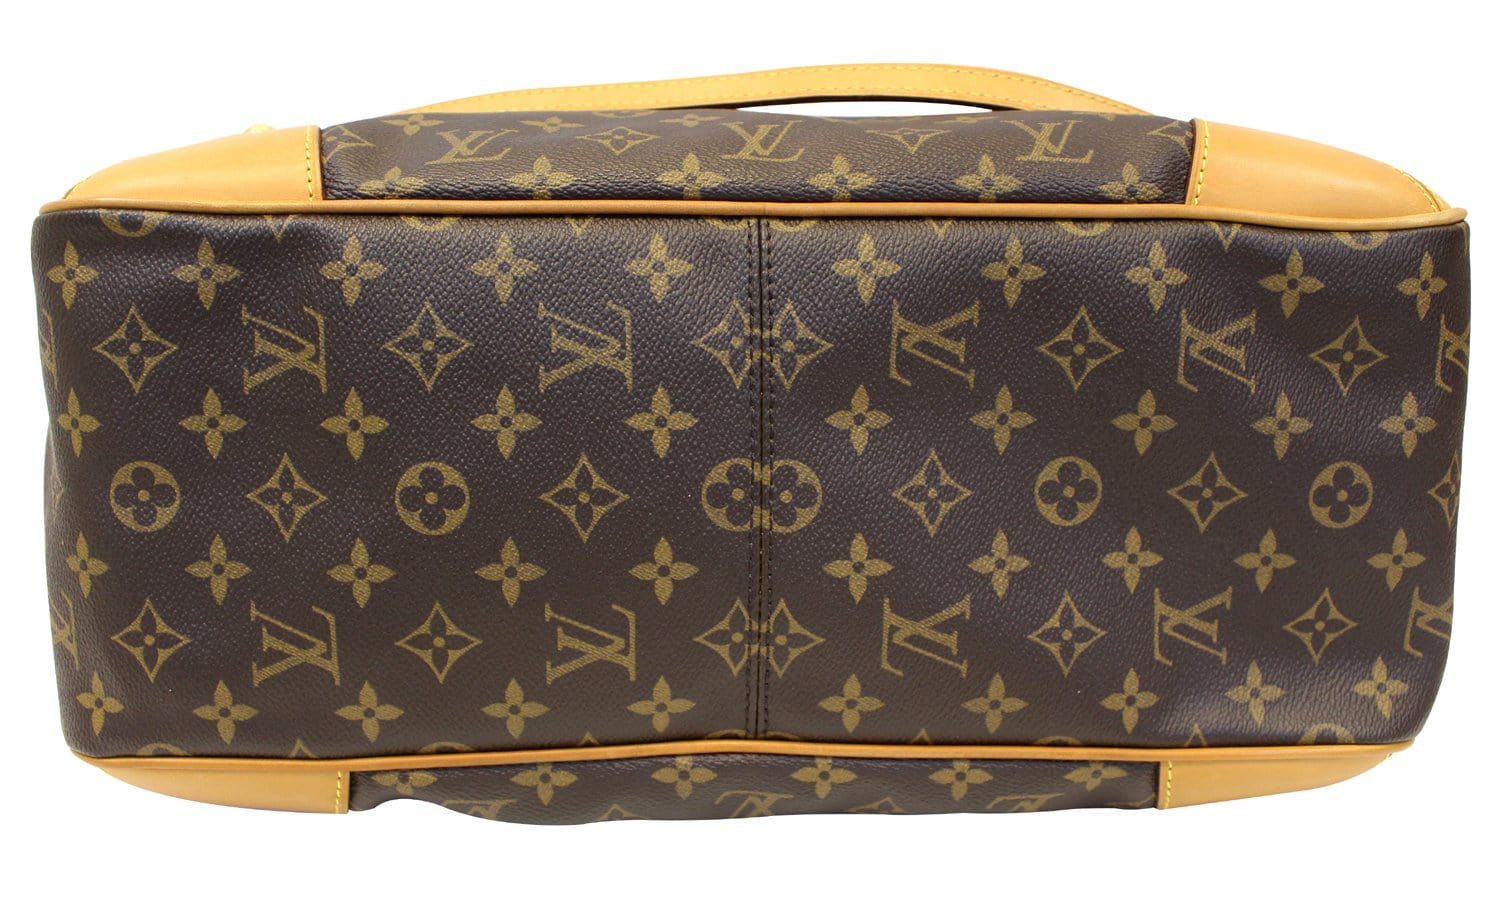 Replica Louis Vuitton M51188 Stresa GM Shoulder Bag Monogram Canvas For Sale